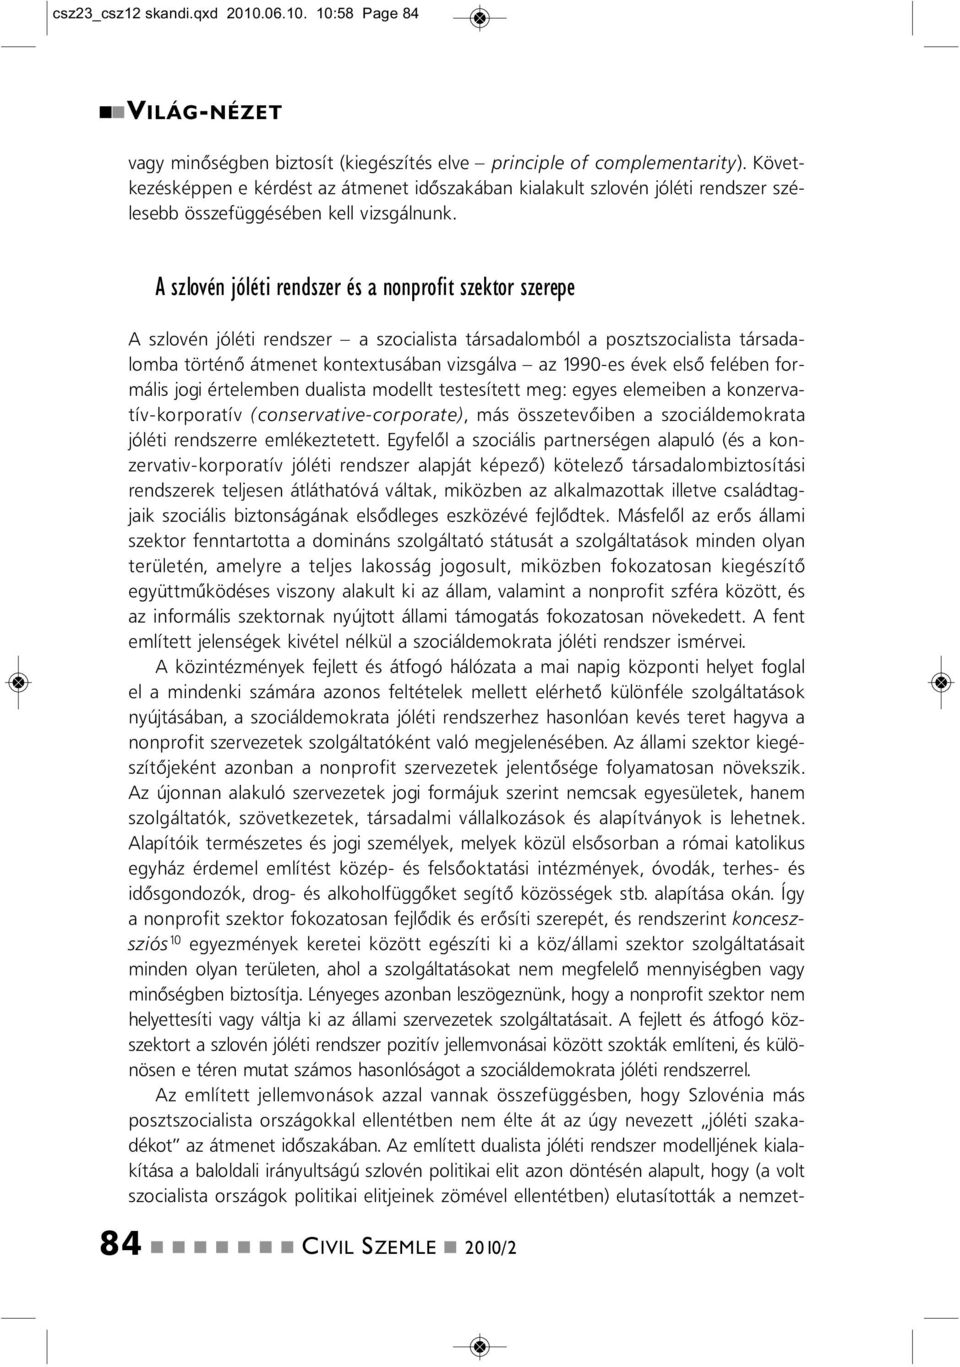 10:58 Page 84 A szlové jóléti redszer a szocialista társadalomból a posztszocialista társadalomba törtéő átmeet kotextusába vizsgálva az 1990-es évek első felébe formális jogi értelembe dualista